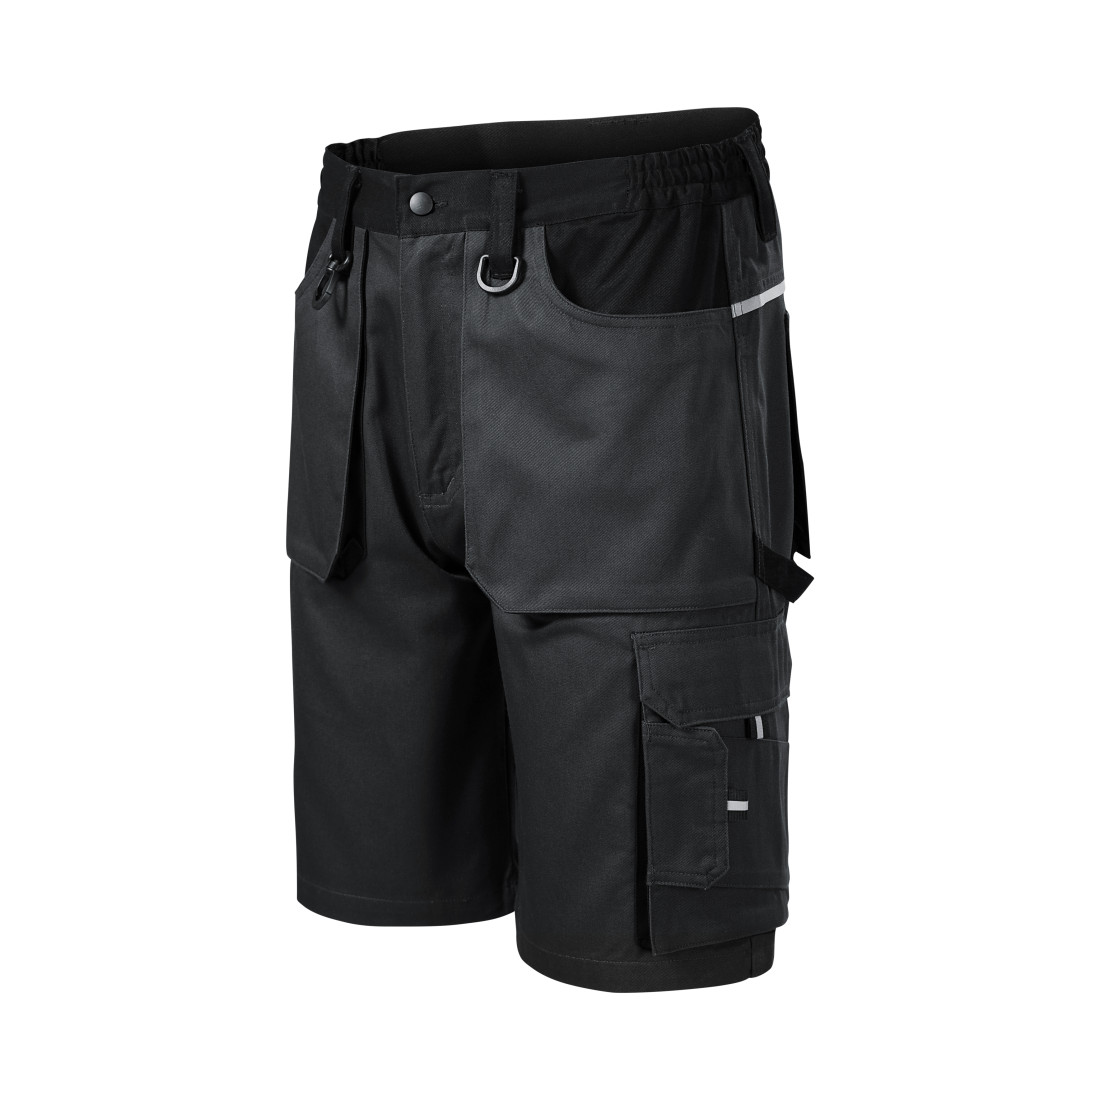 Pantalones cortos de trabajo WOODY para hombres - Ropa de protección